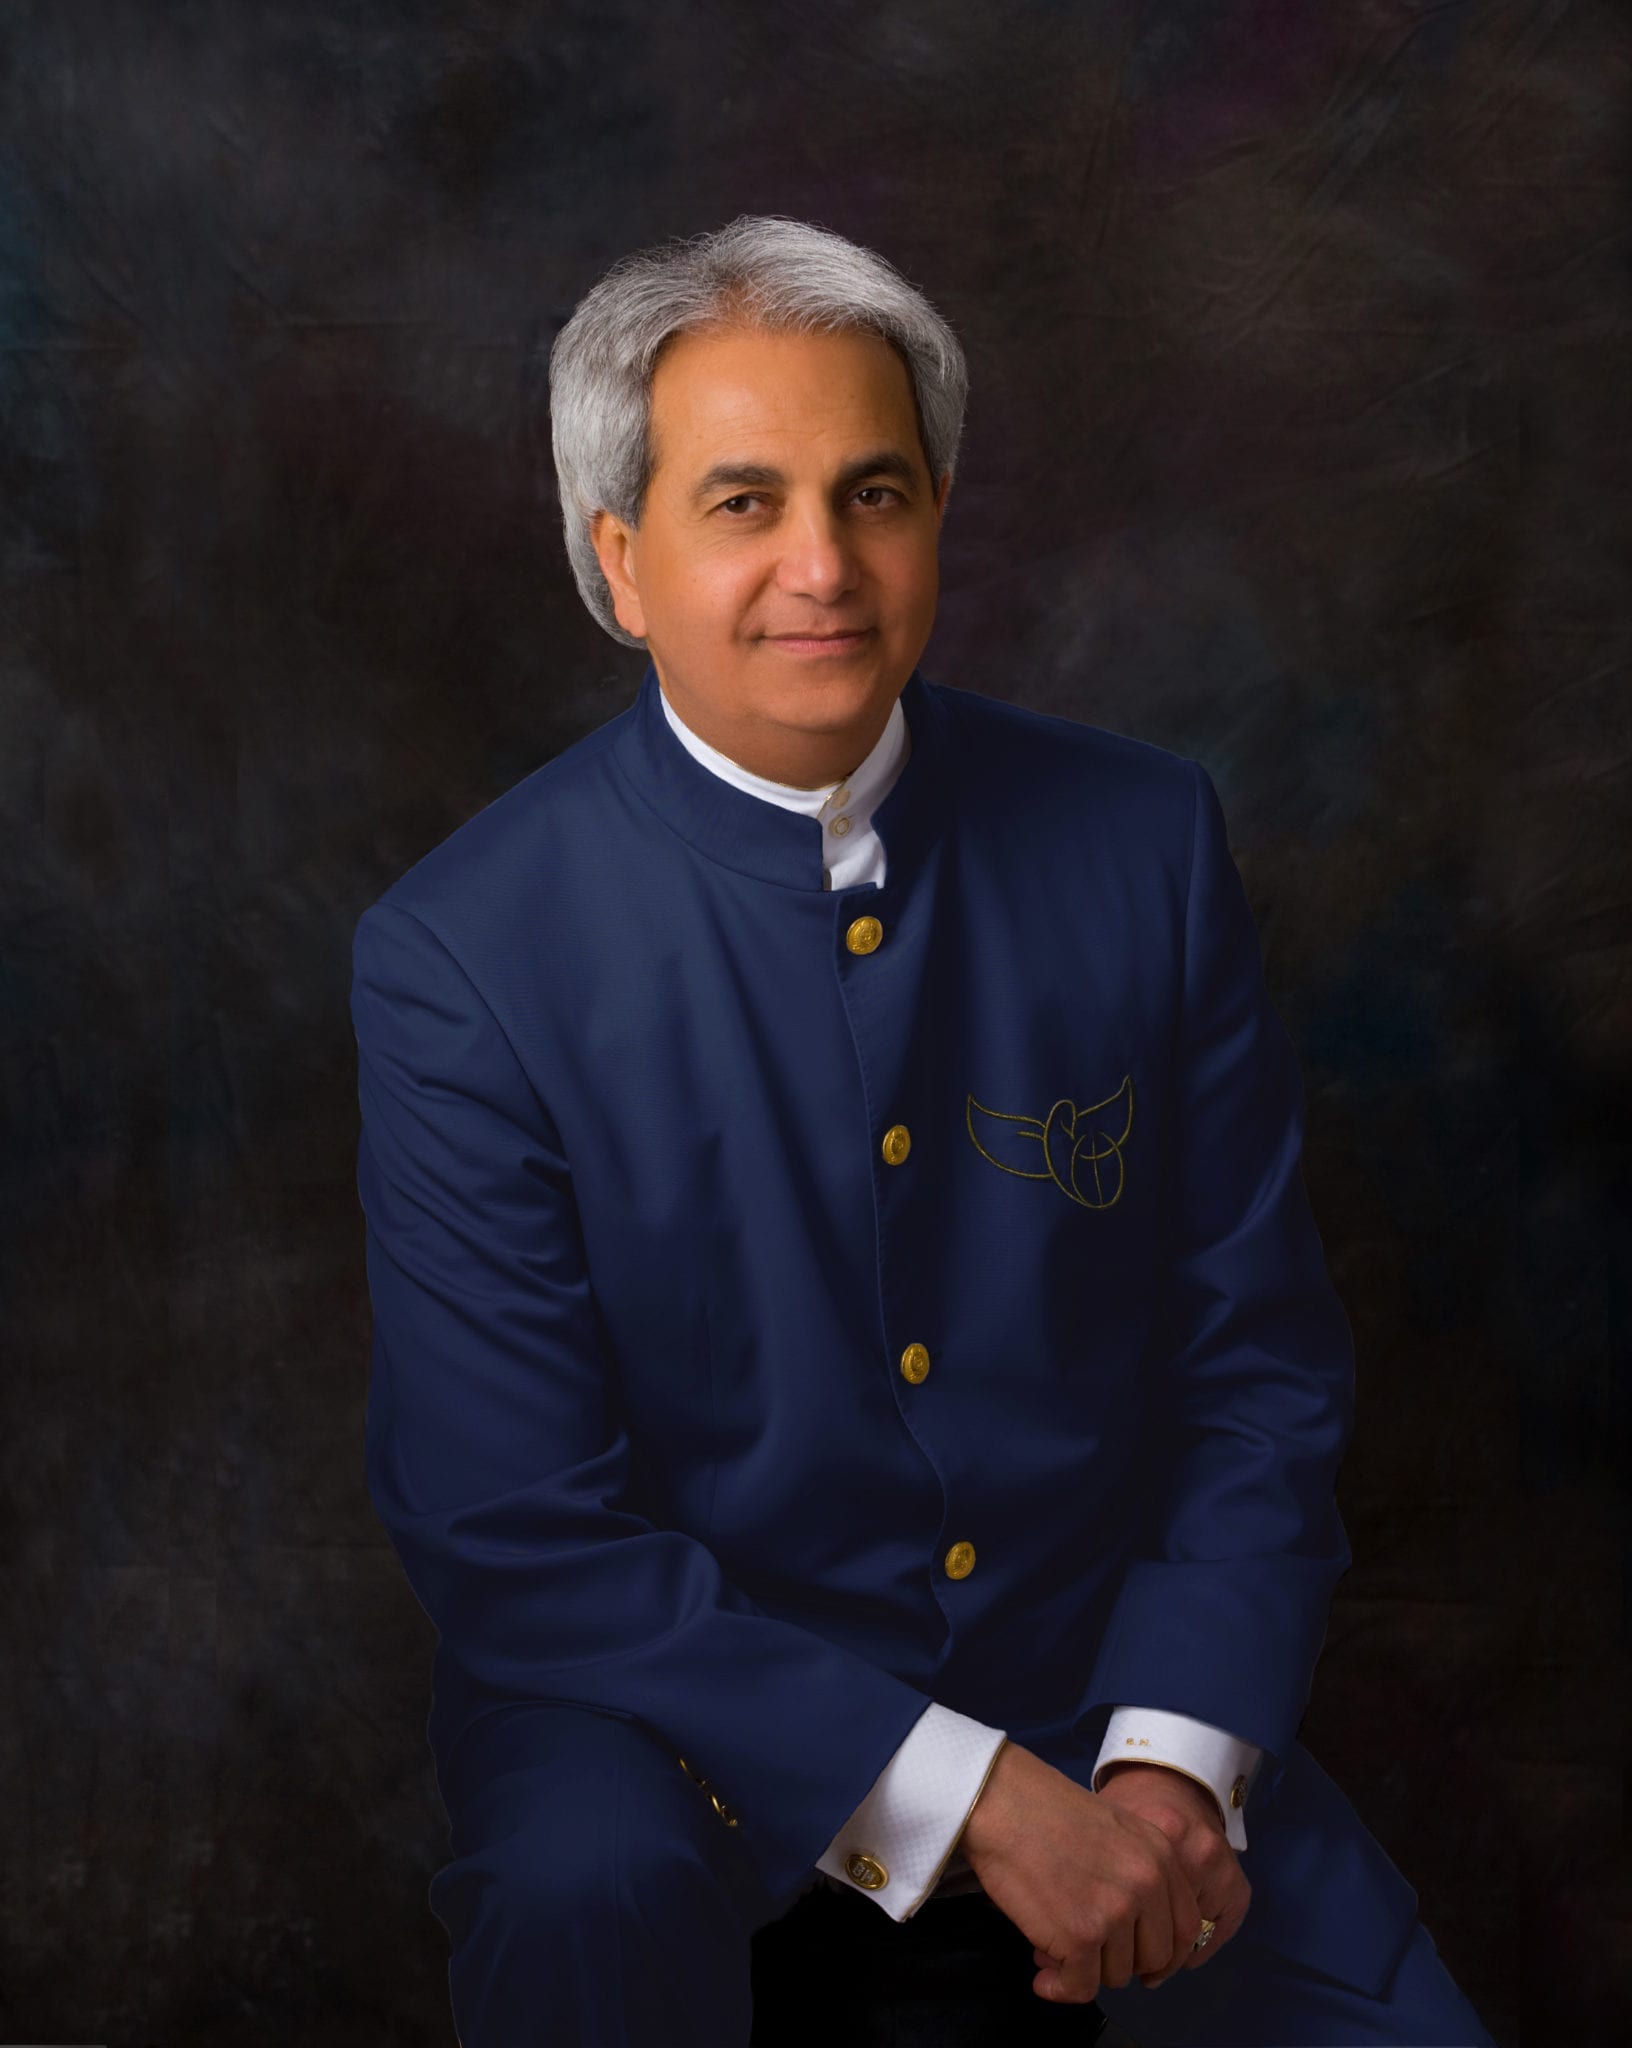 Pastor Benny Hinn portrait in blue suit